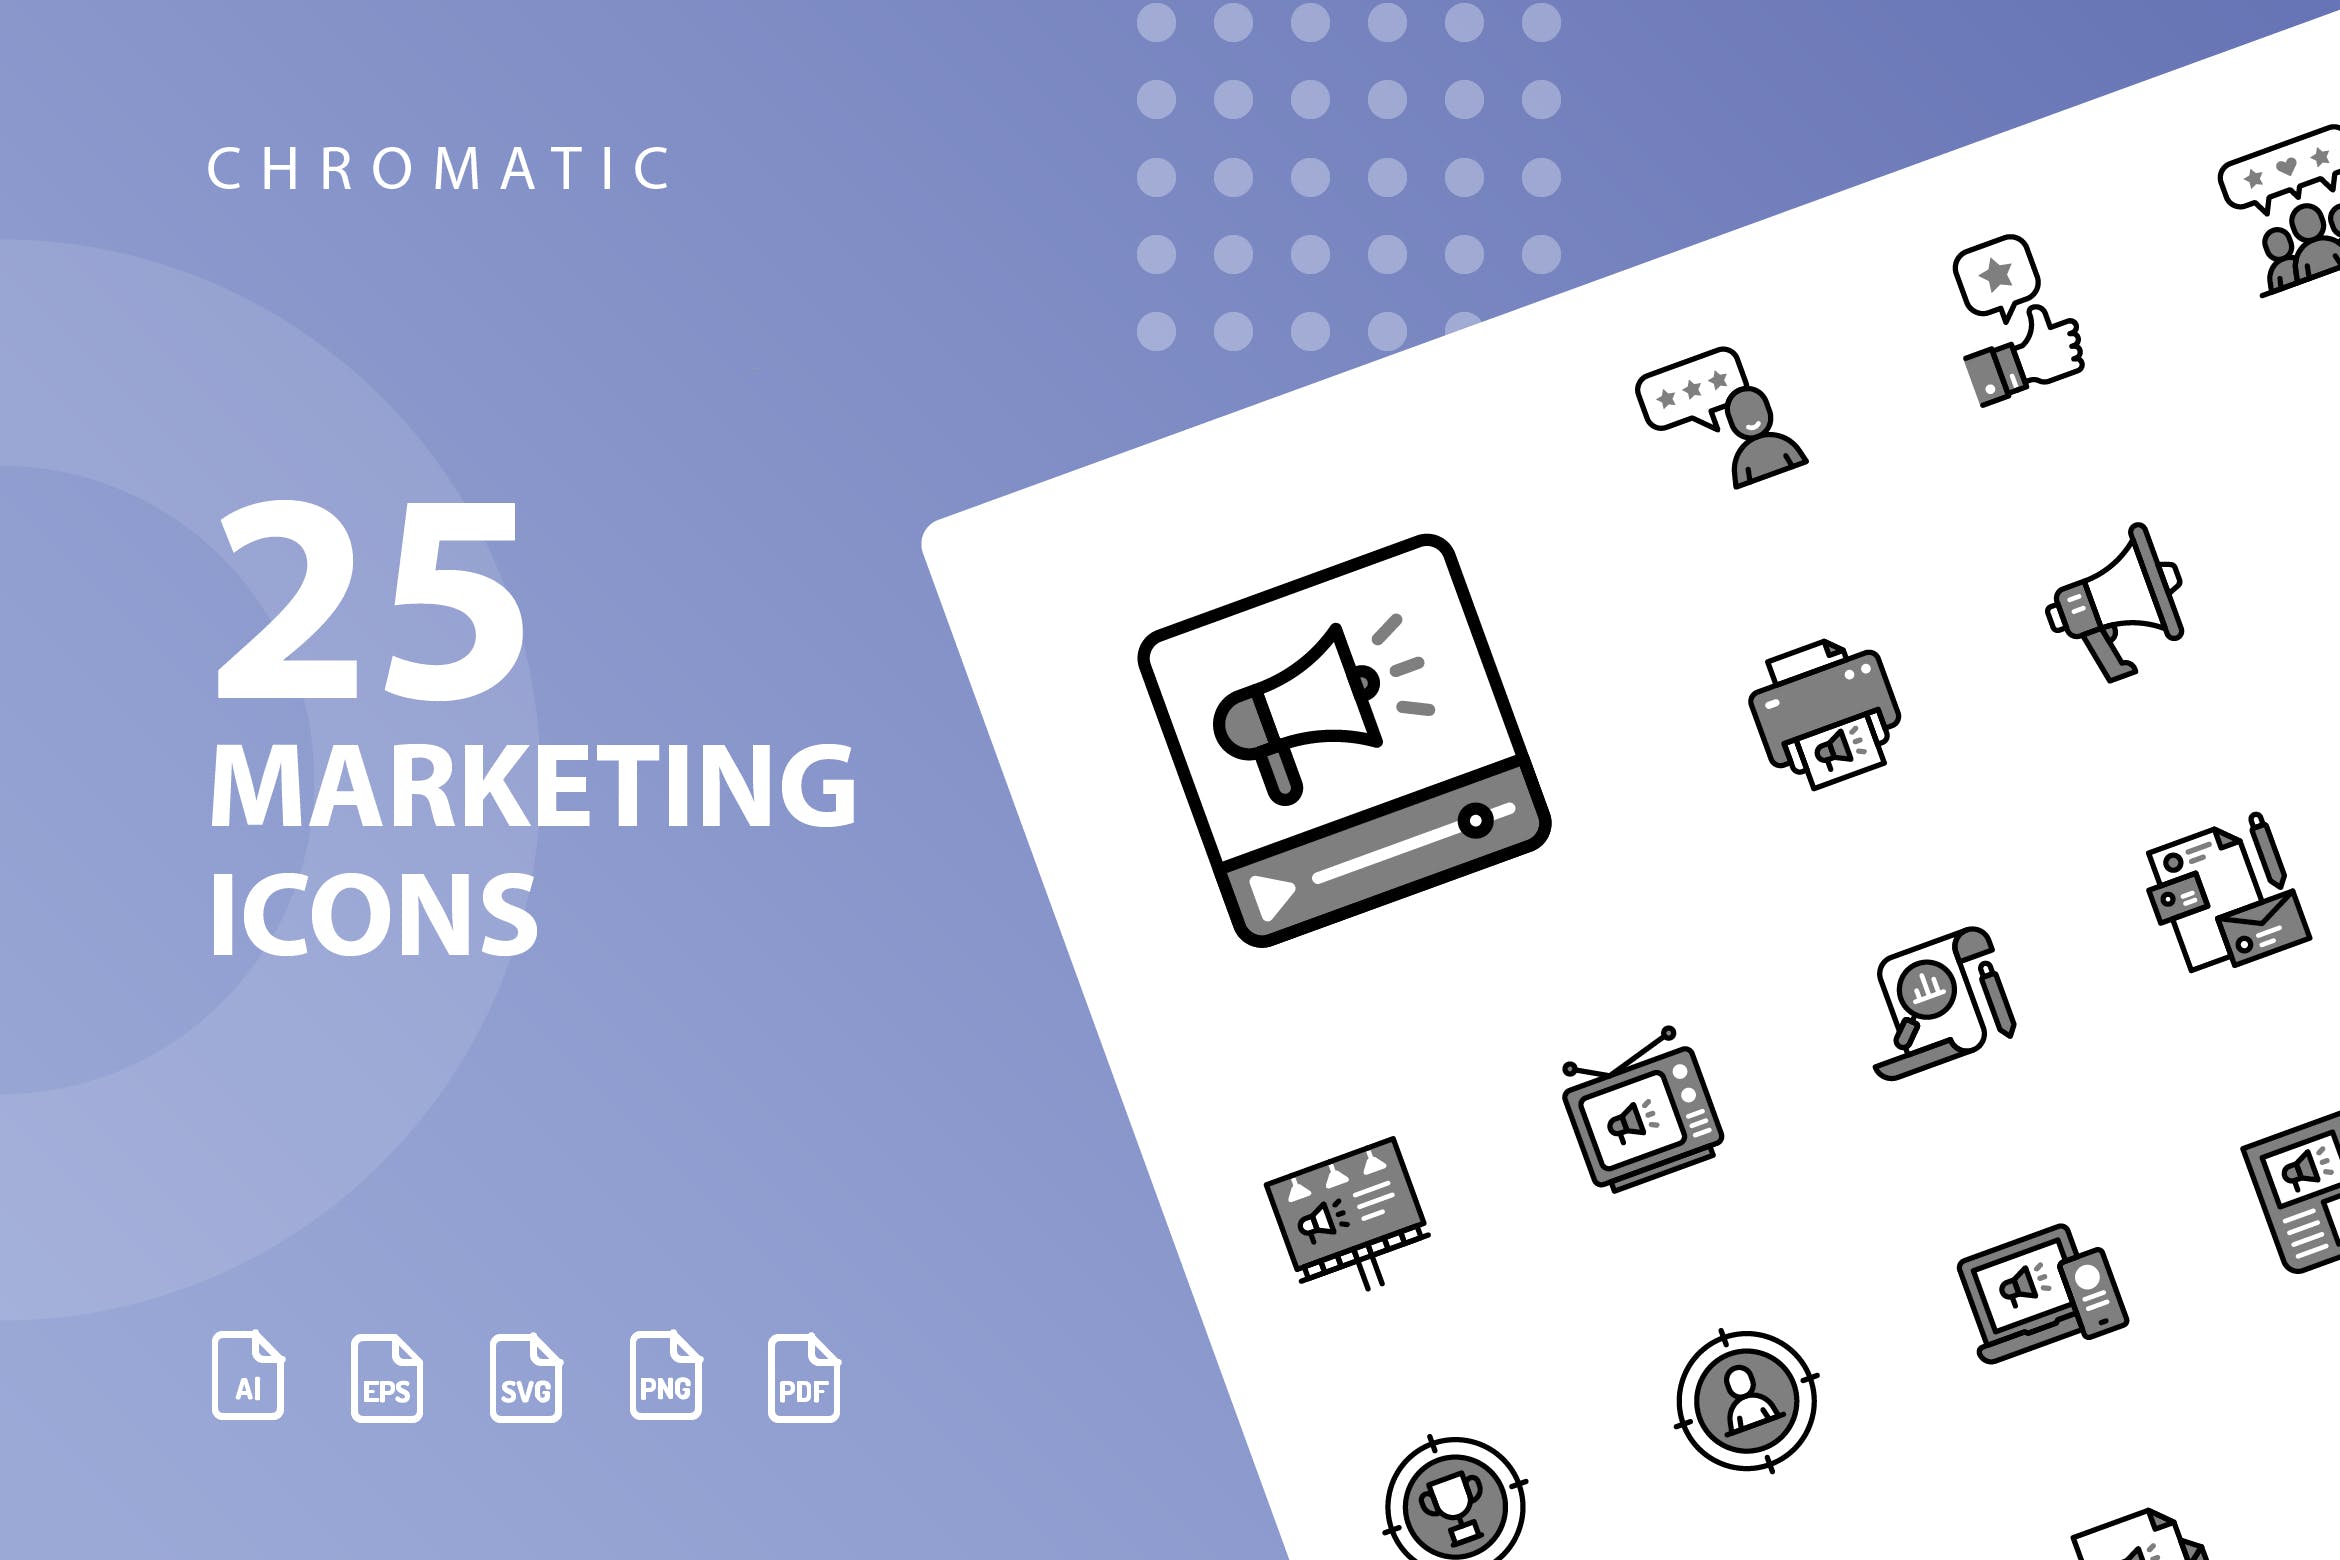 25枚市场营销Chromatic风格矢量蚂蚁素材精选图标 Marketing Chromatic Icons插图